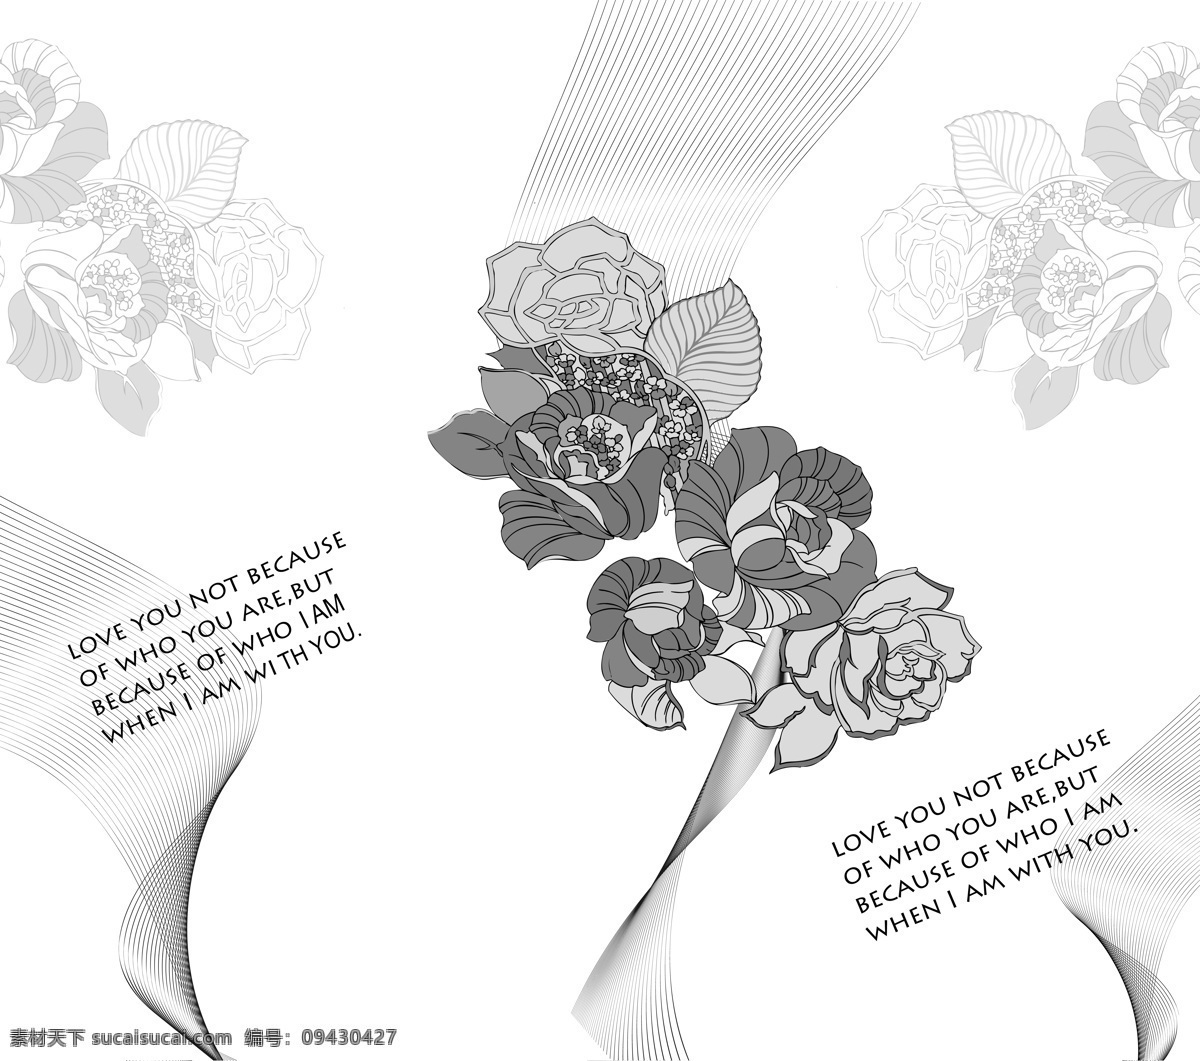 时尚花纹 灰色 线条 动感 曲线 英文 字母 黑色 玫瑰 花朵 时尚 移门 设计素材 移门图案 底纹边框